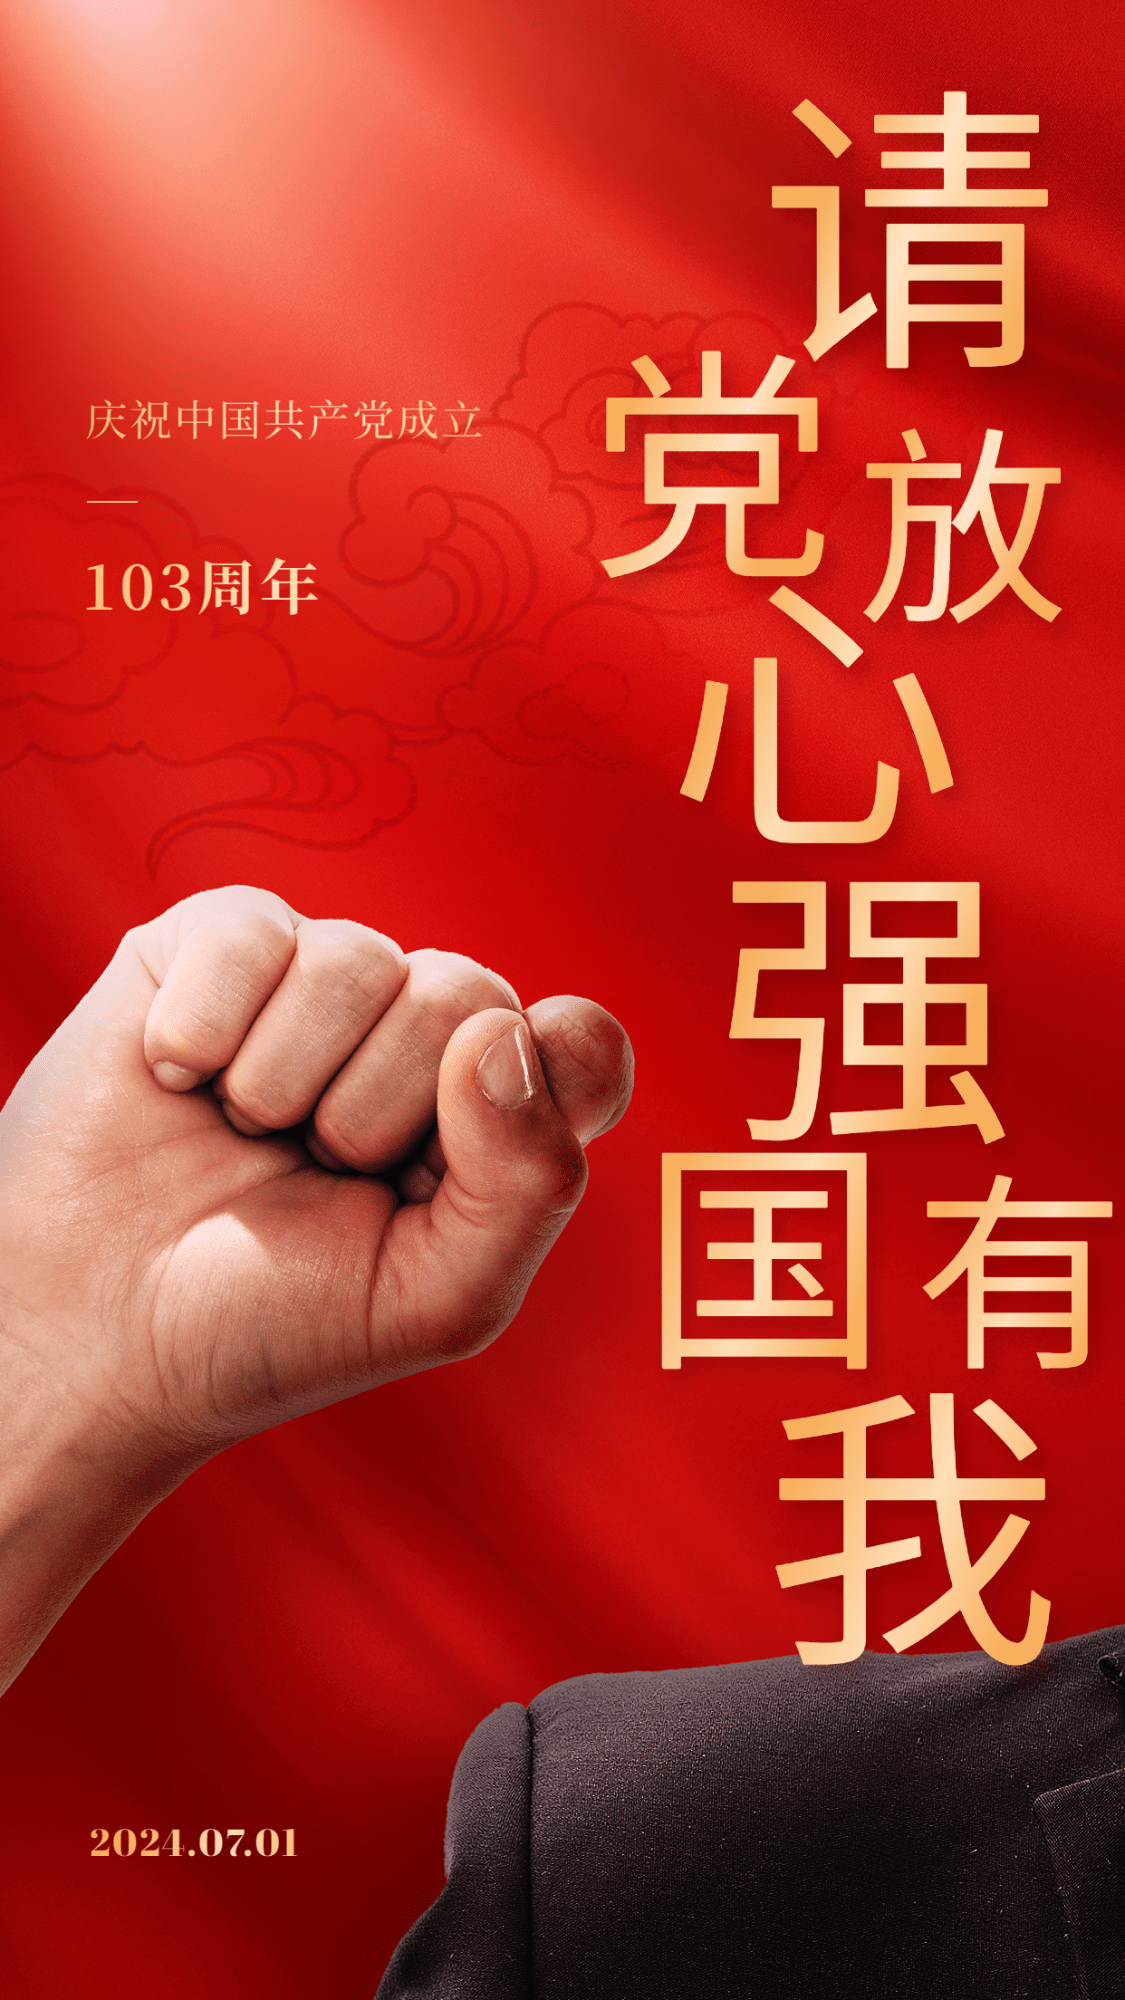 建党节节日祝福排版手机海报